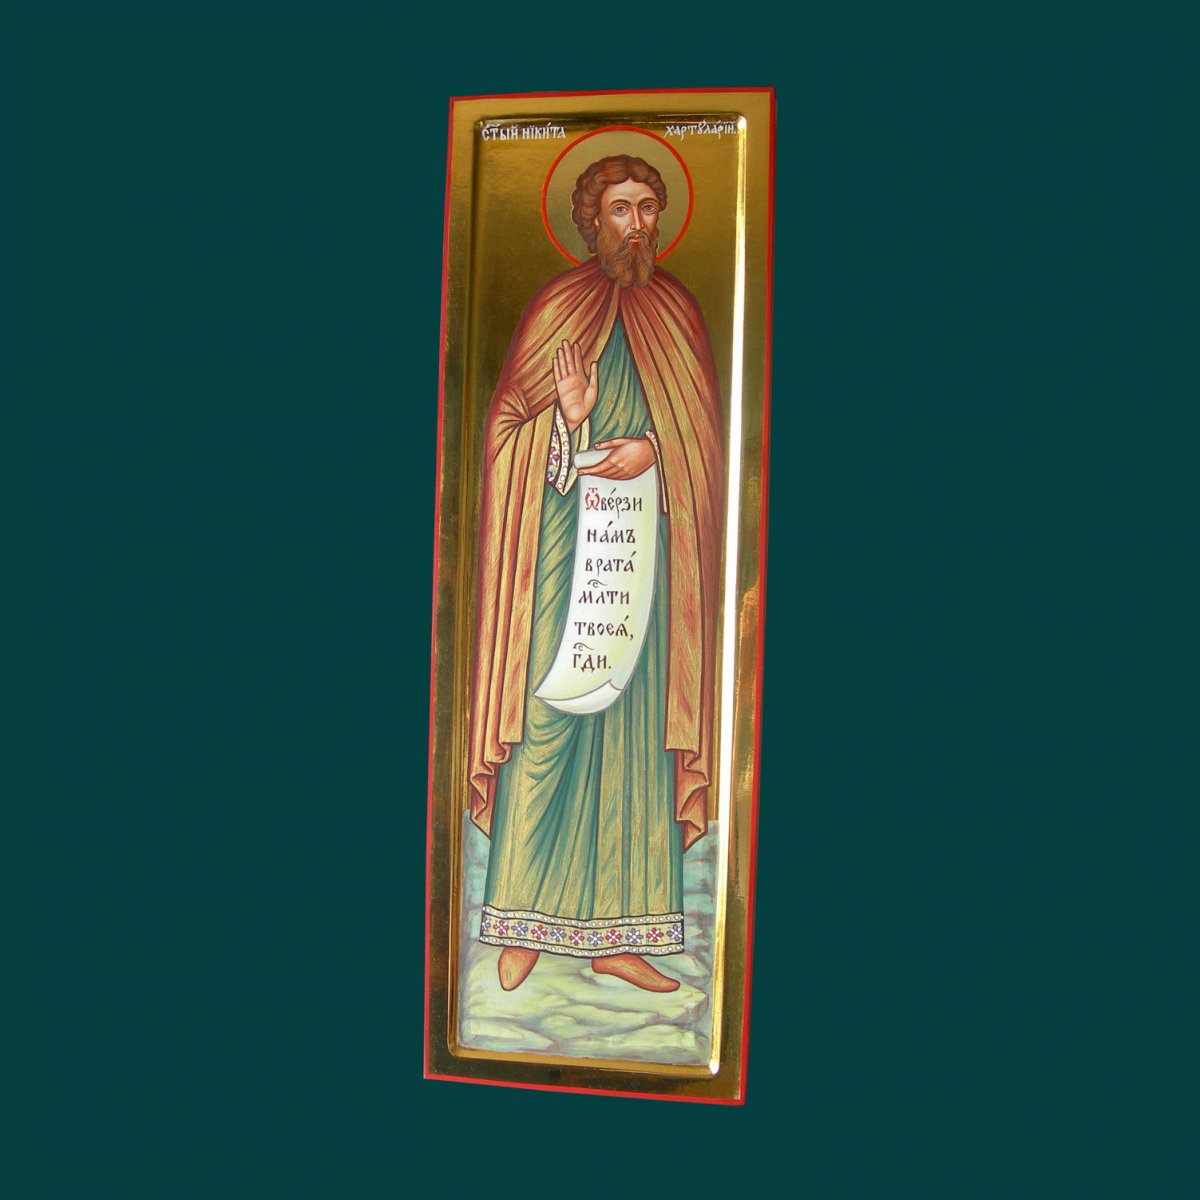 Мерная икона. Образ святого Никиты Константинопольского  хартулария.